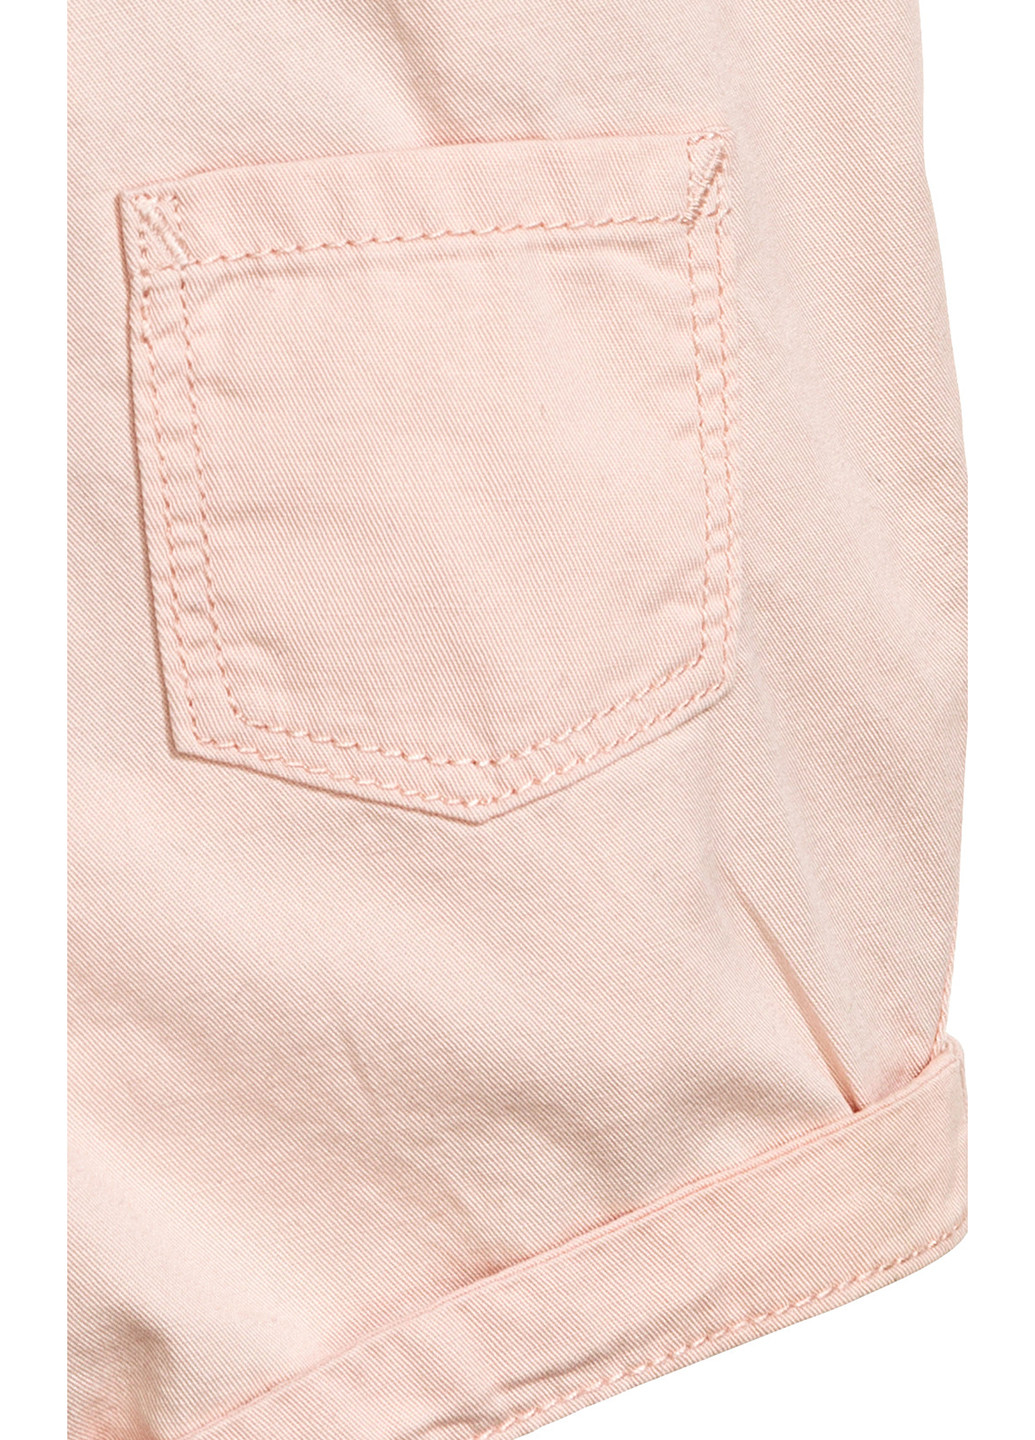 Комбинезон H&M комбинезон-шорты однотонный розовый джинсовый хлопок